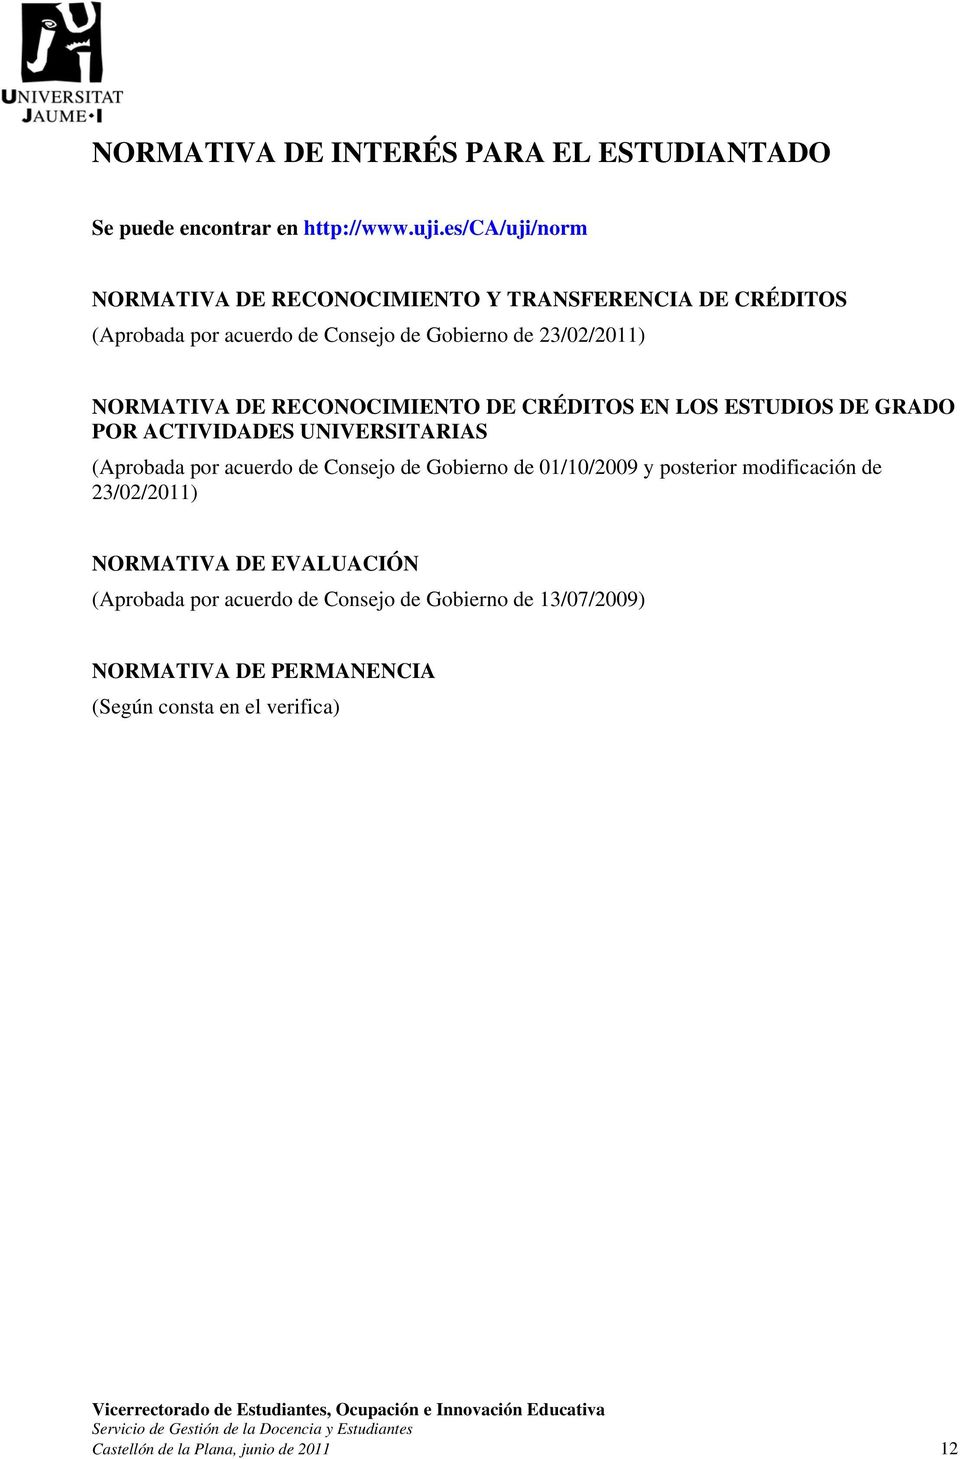 RECONOCIMIENTO DE CRÉDITOS EN LOS ESTUDIOS DE GRADO POR ACTIVIDADES UNIVERSITARIAS (Aprobada por acuerdo de Consejo de Gobierno de 01/10/2009 y